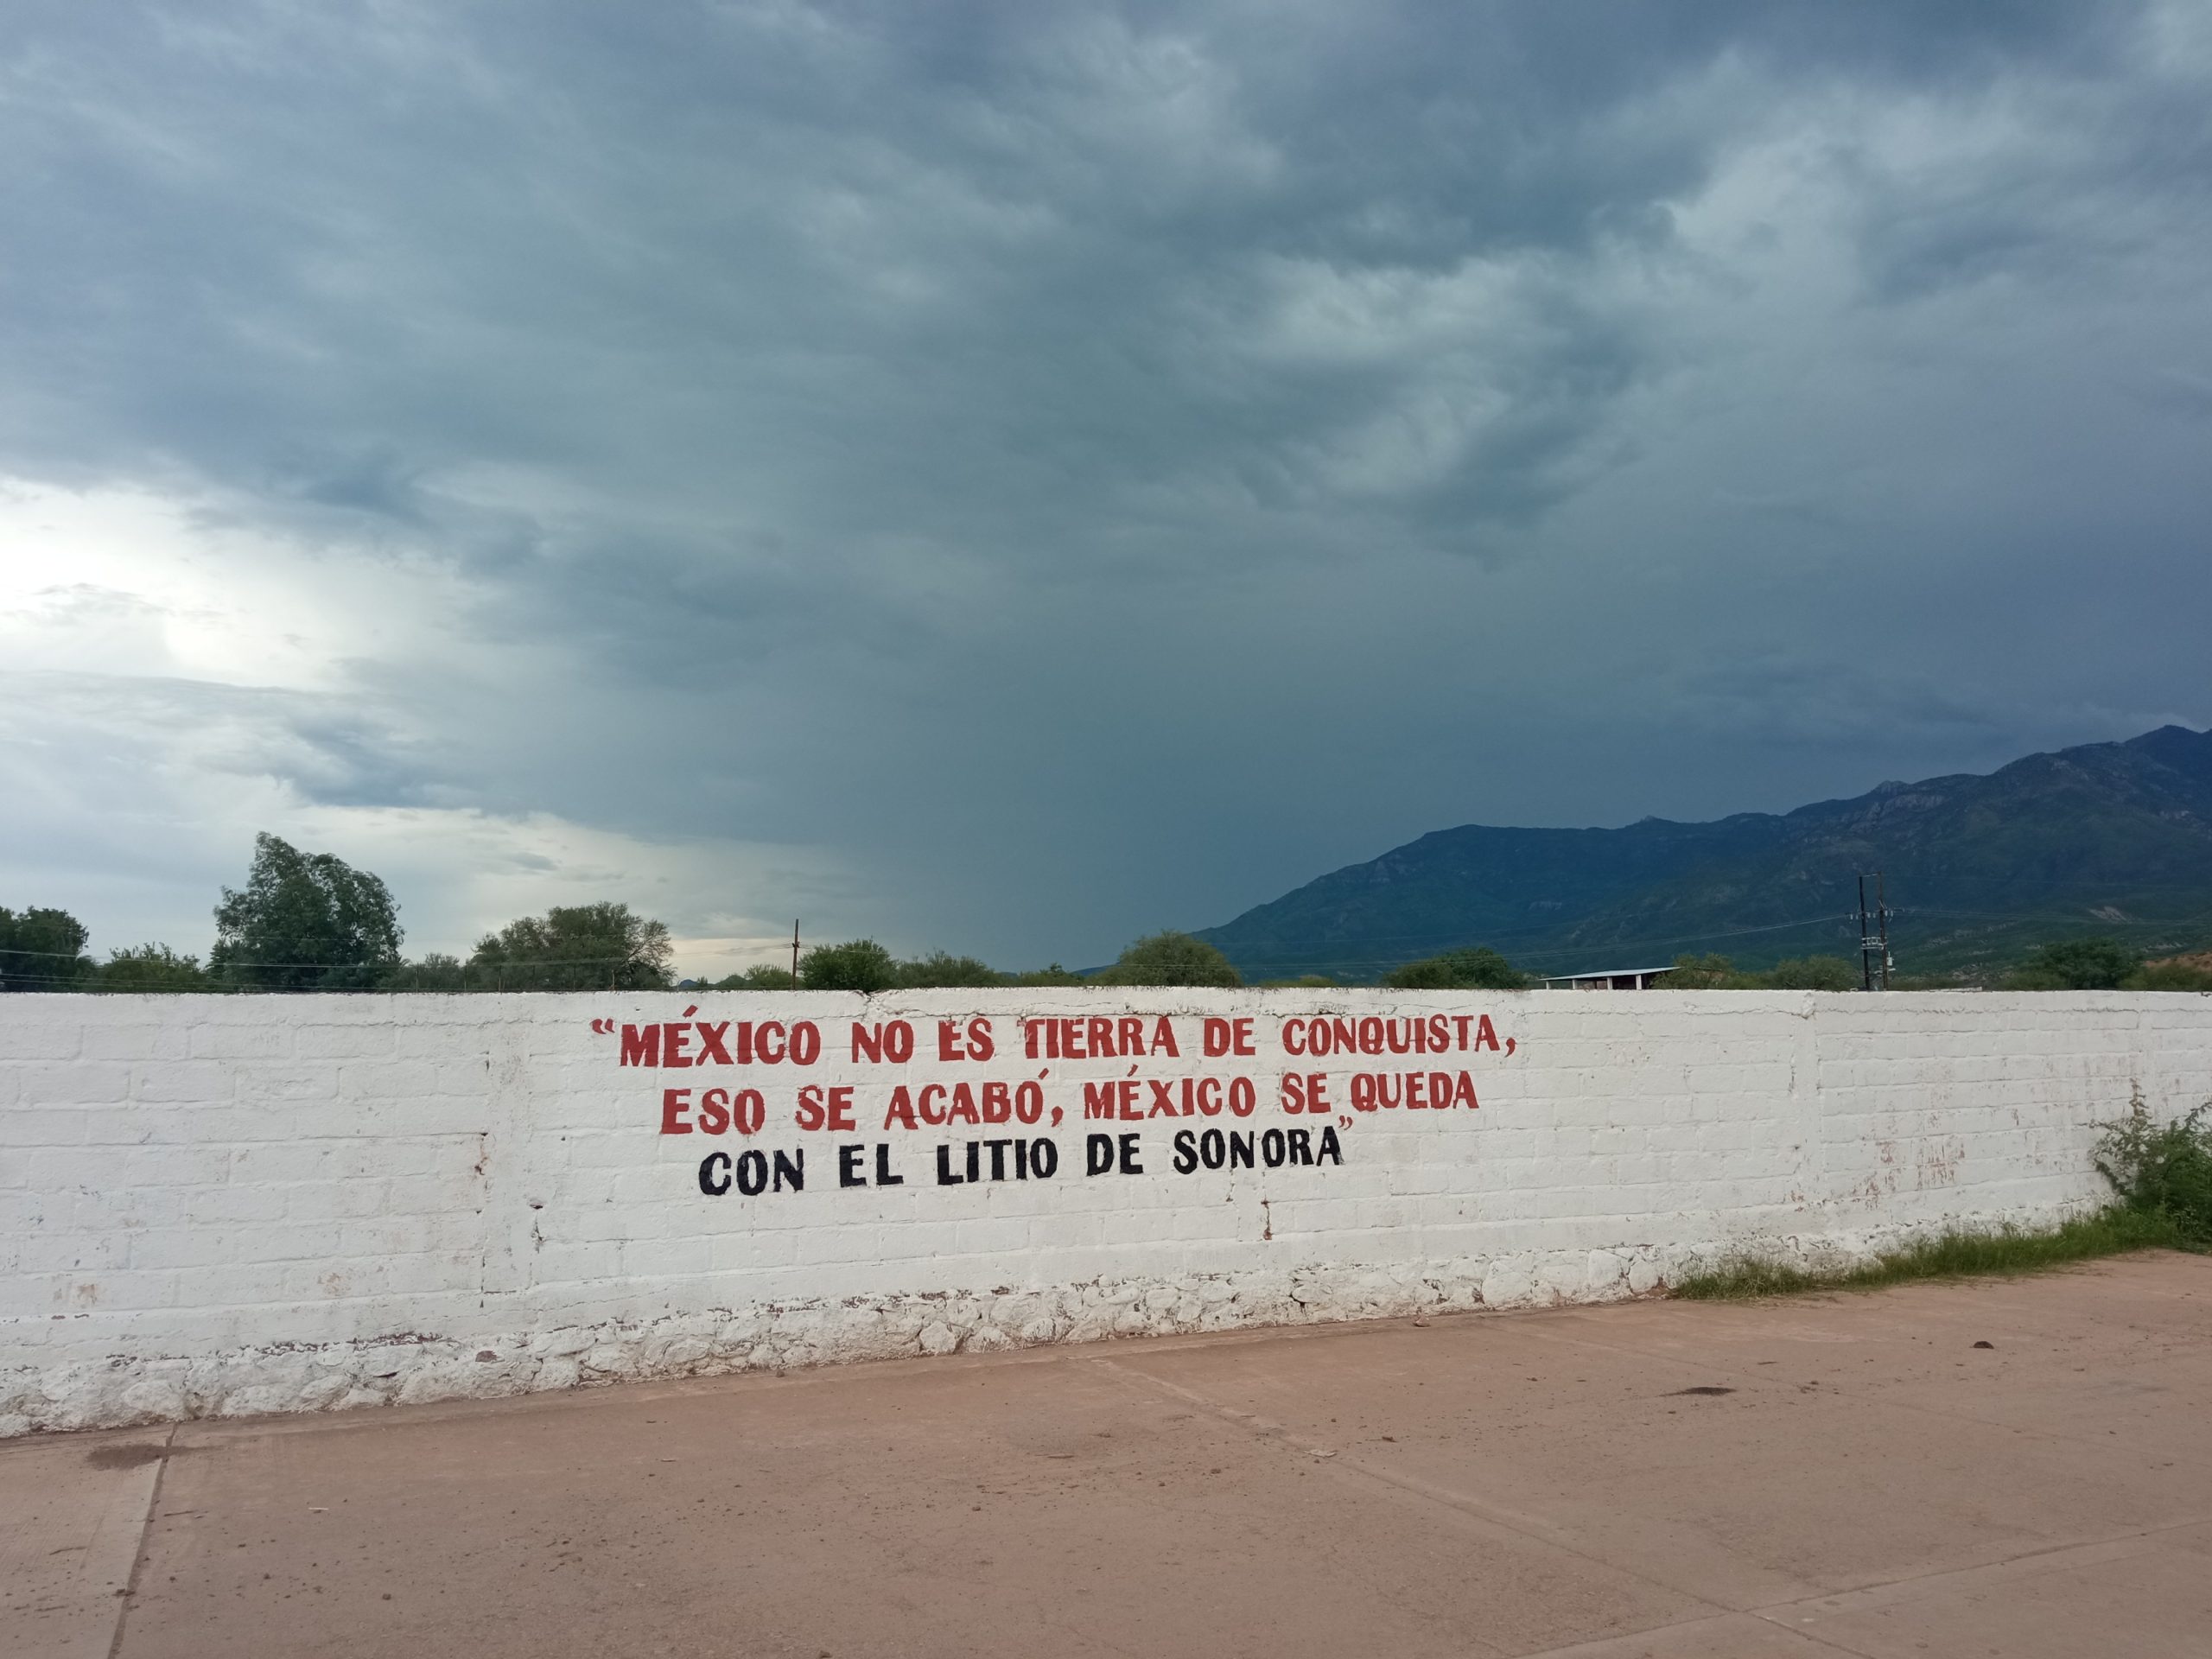 <p>Un muro en Bacadéhuachi, en el estado de Sonora, con el mensaje &#8220;México no es una tierra conquistada, eso se acabó, México se queda con el litio de Sonora&#8221;. Las reservas de litio del estado han estado en el foco de atención, pero se ha avanzado lentamente en su explotación (Imagen: Ann Deslandes / Diálogo Chino)</p>